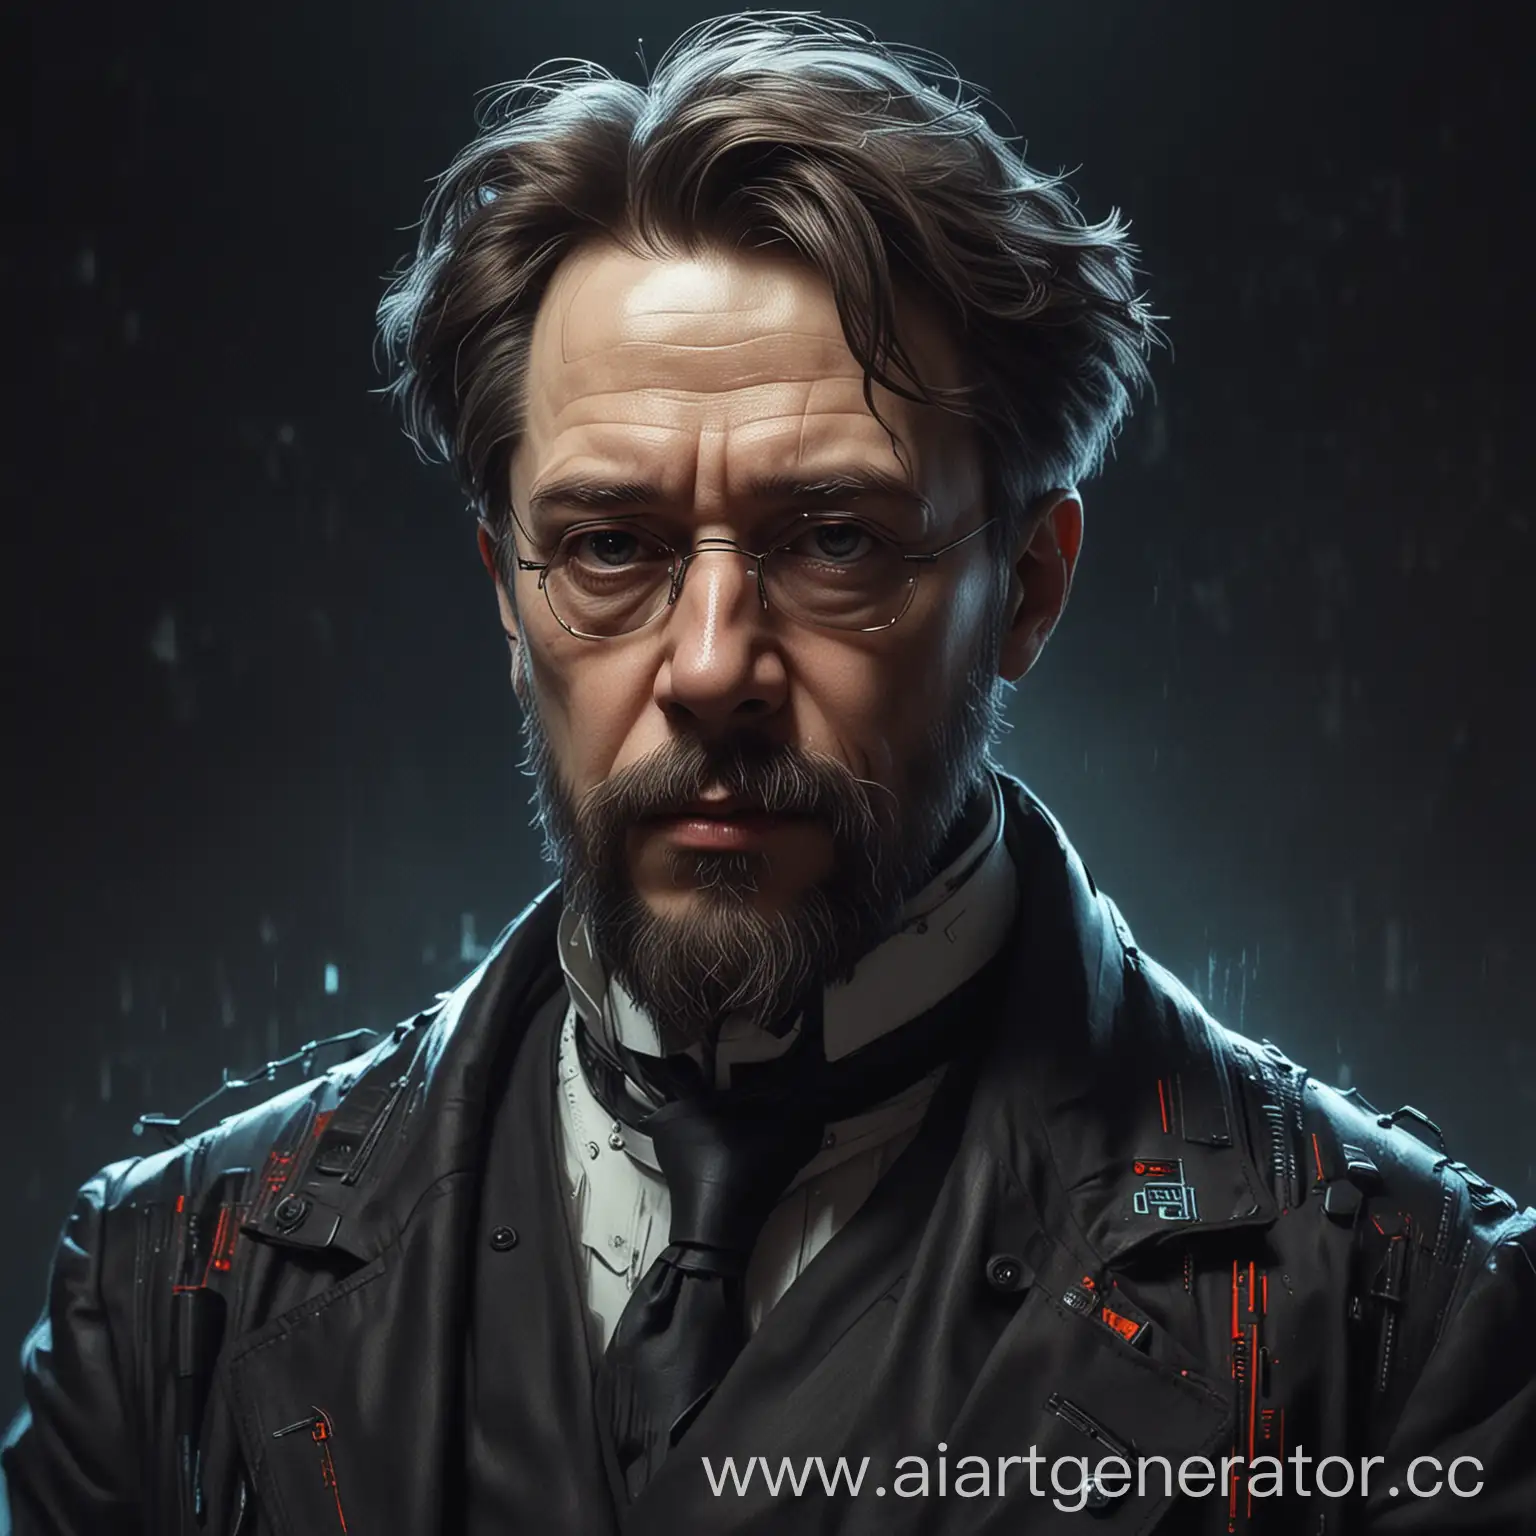 Anton-Pavlovich-Chekhov-Cyberpunk-Portrait